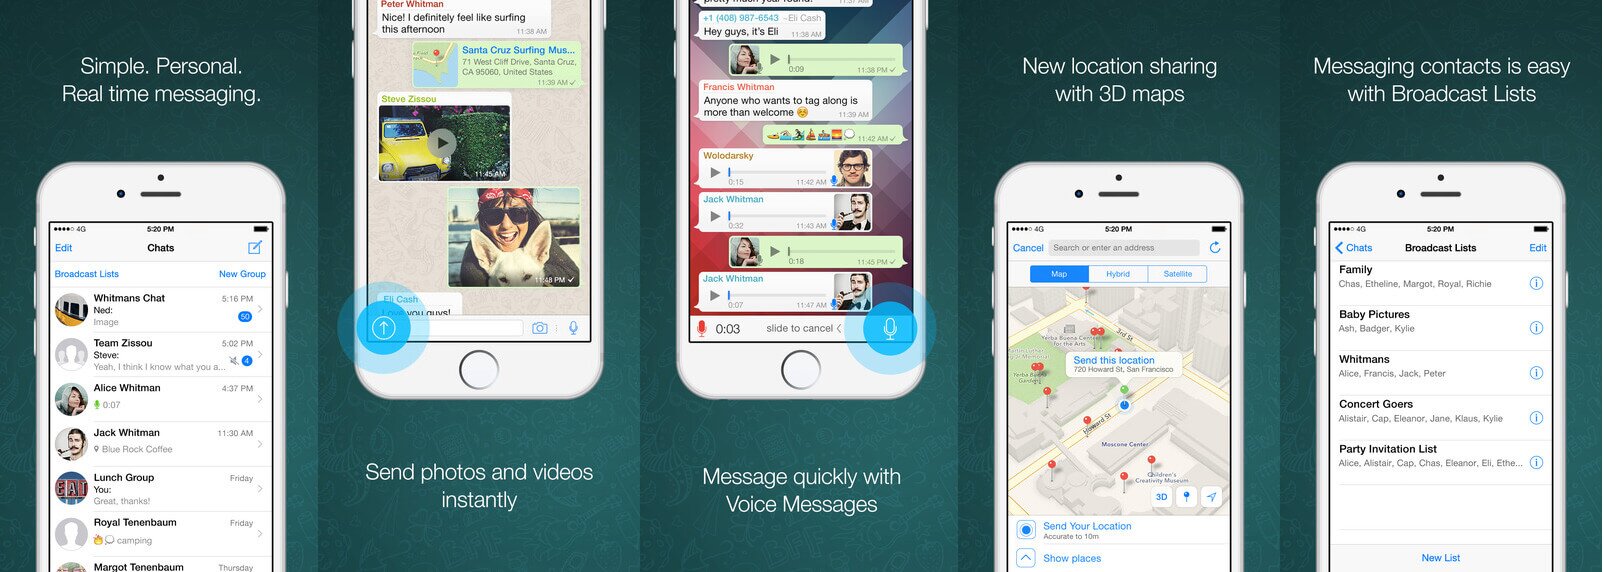 Голосовые звонки в Whatsapp для iOS скоро будут доступны - изображение